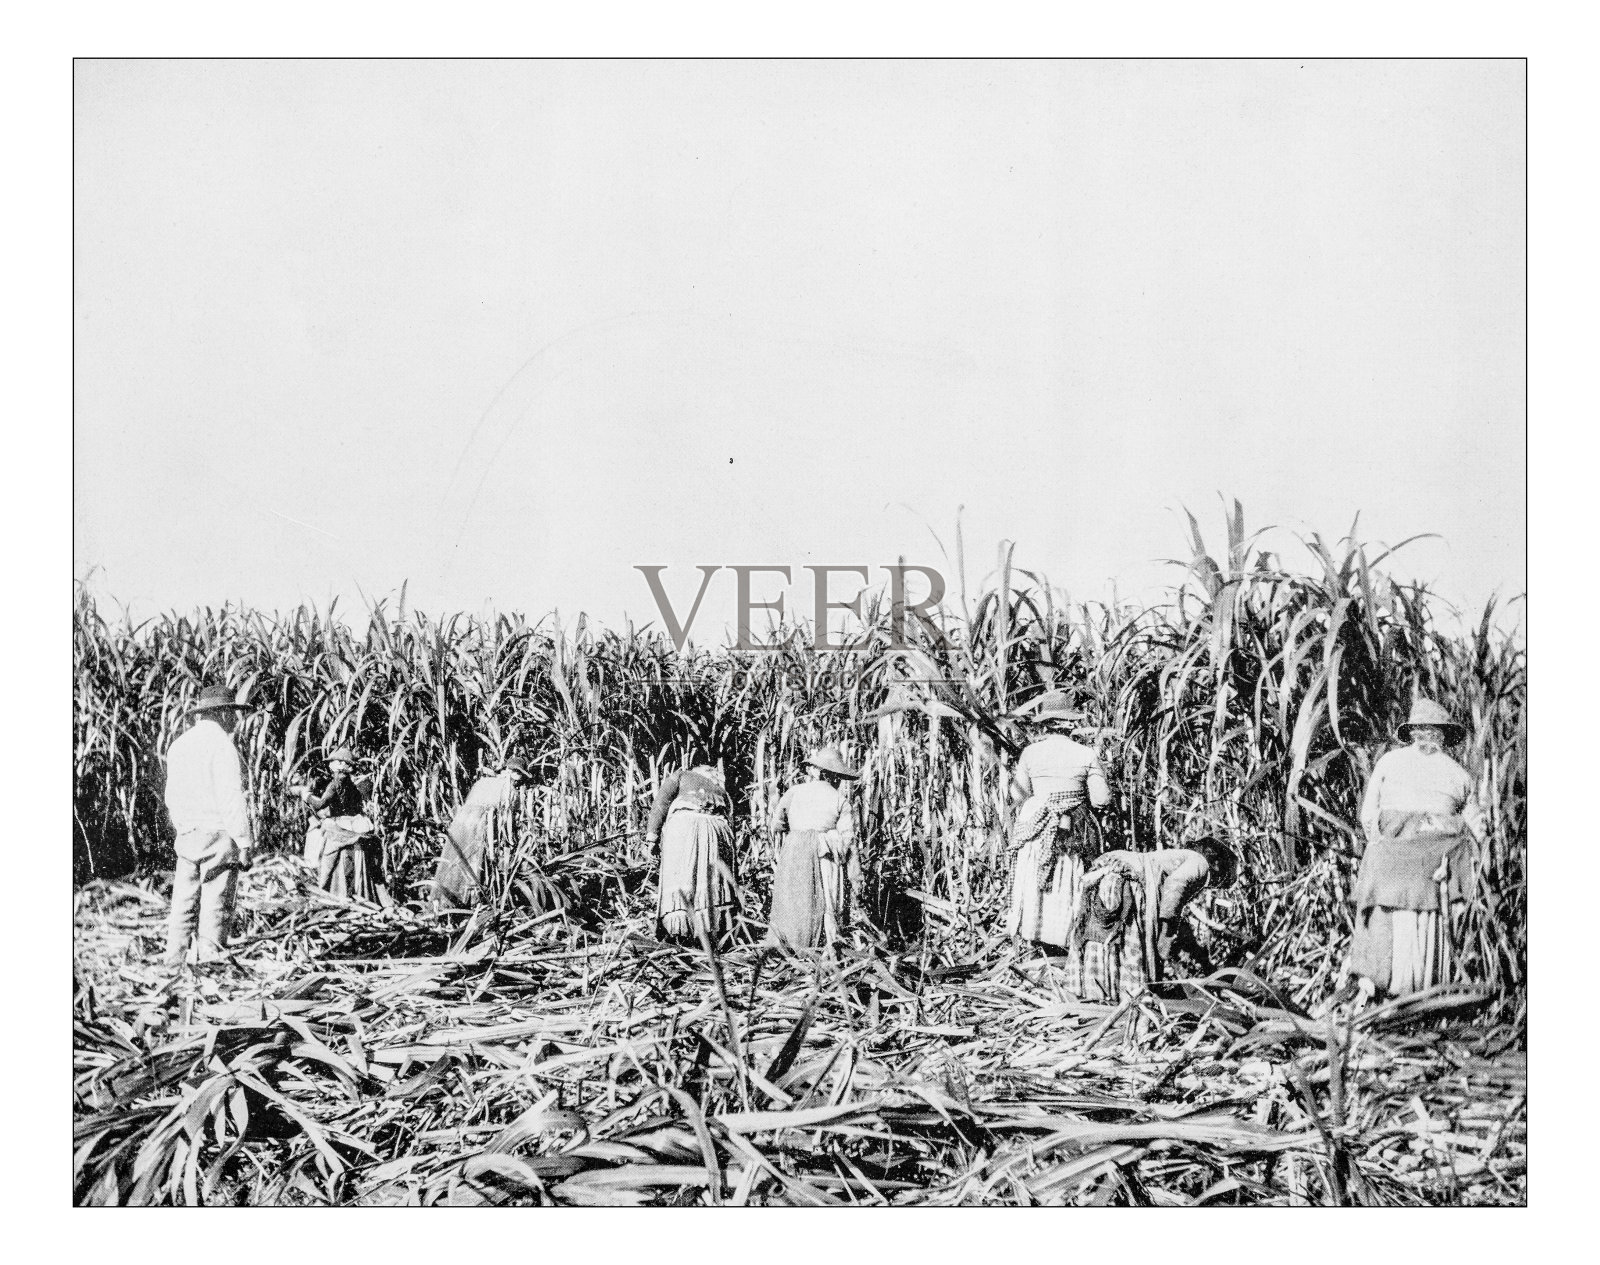 一张19世纪路易斯安那种植园奴隶的古董照片照片摄影图片